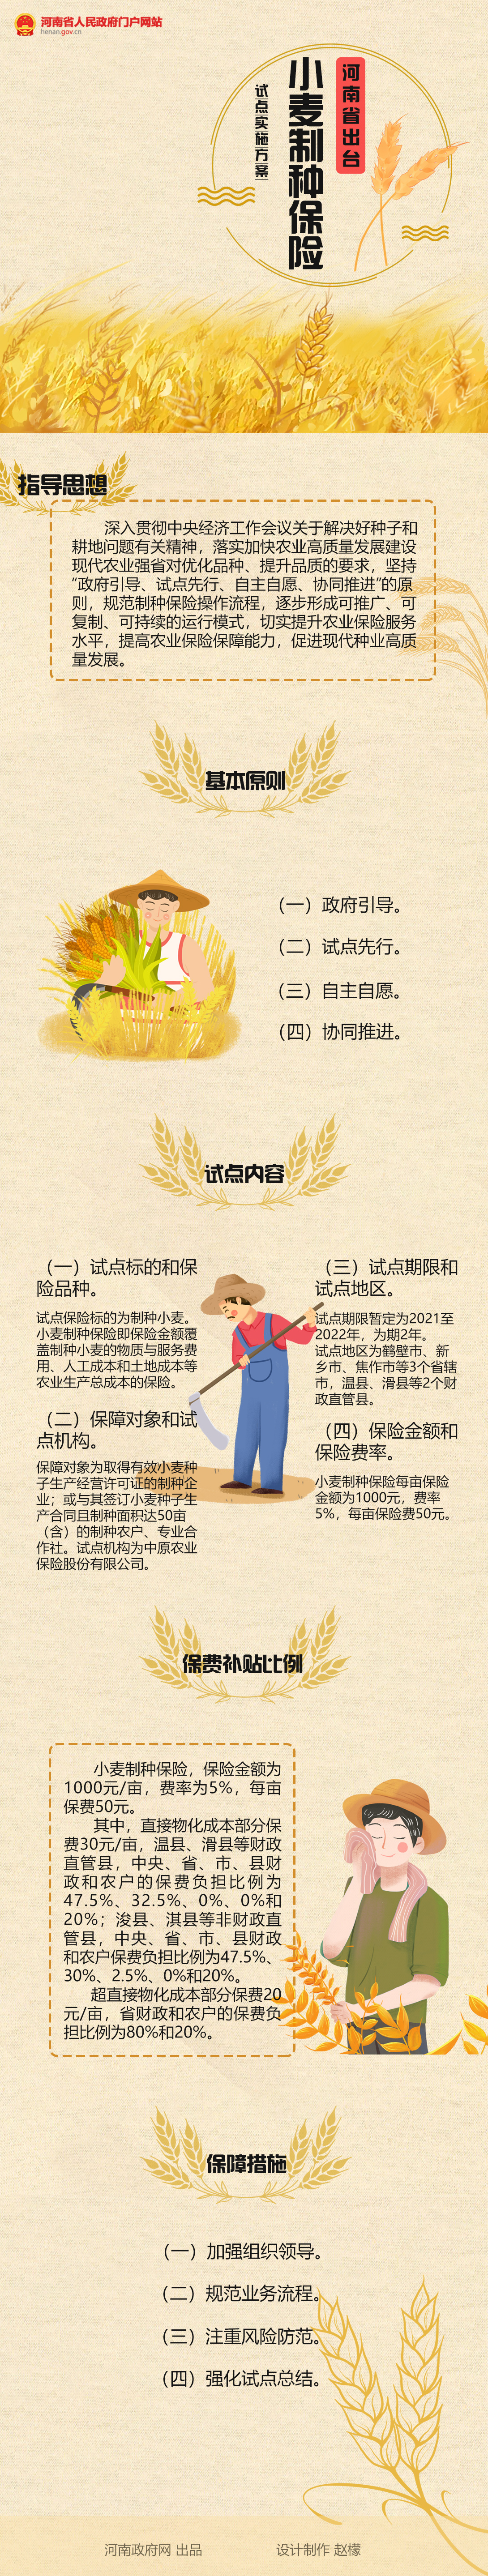 圖解：河南省出臺小麥制種保險試點實施方案